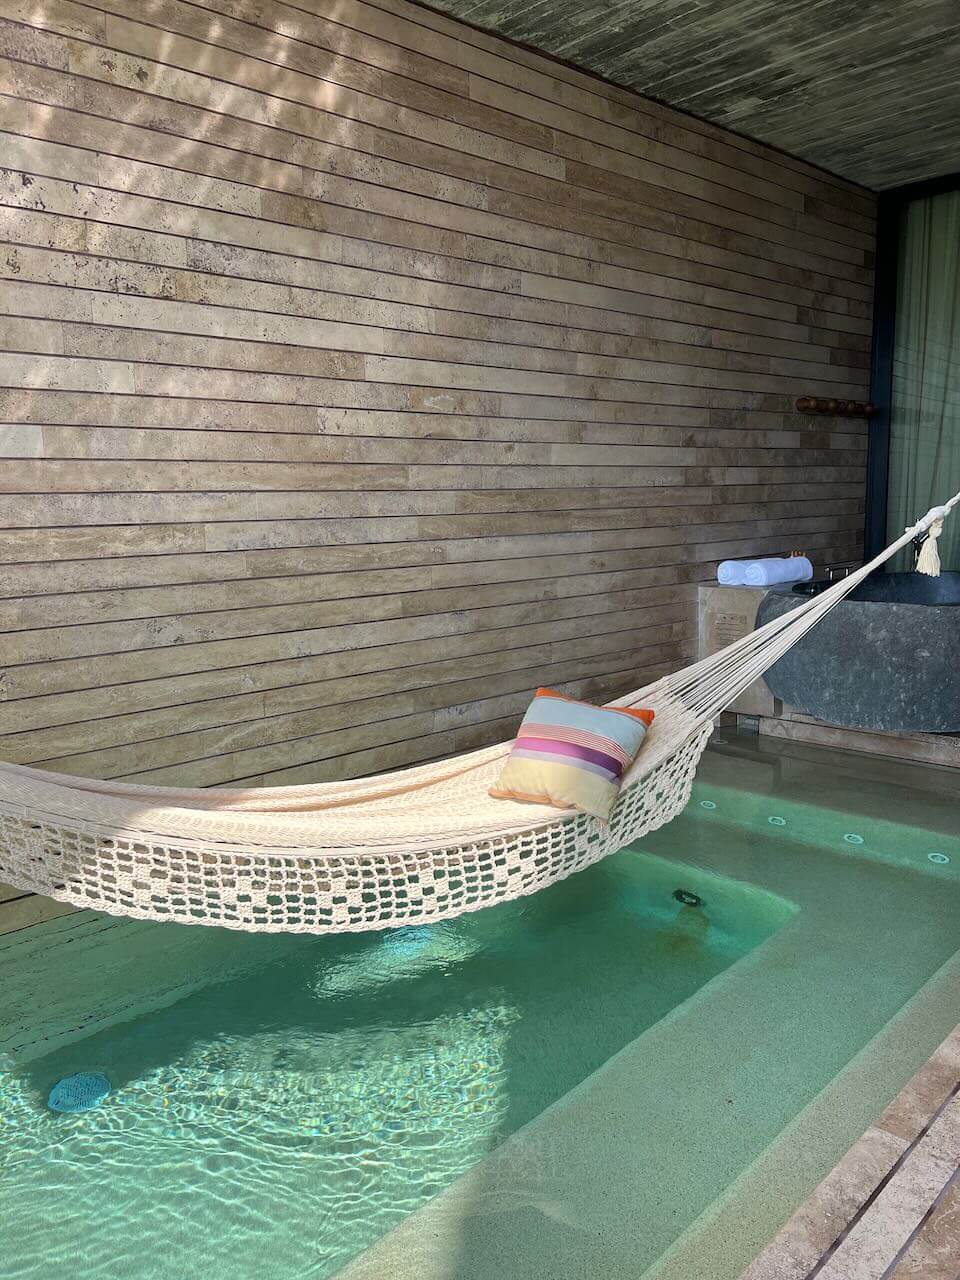 Hammock over private pool in luxury room at La Casa de la Playa luxury hotel in Mexico.